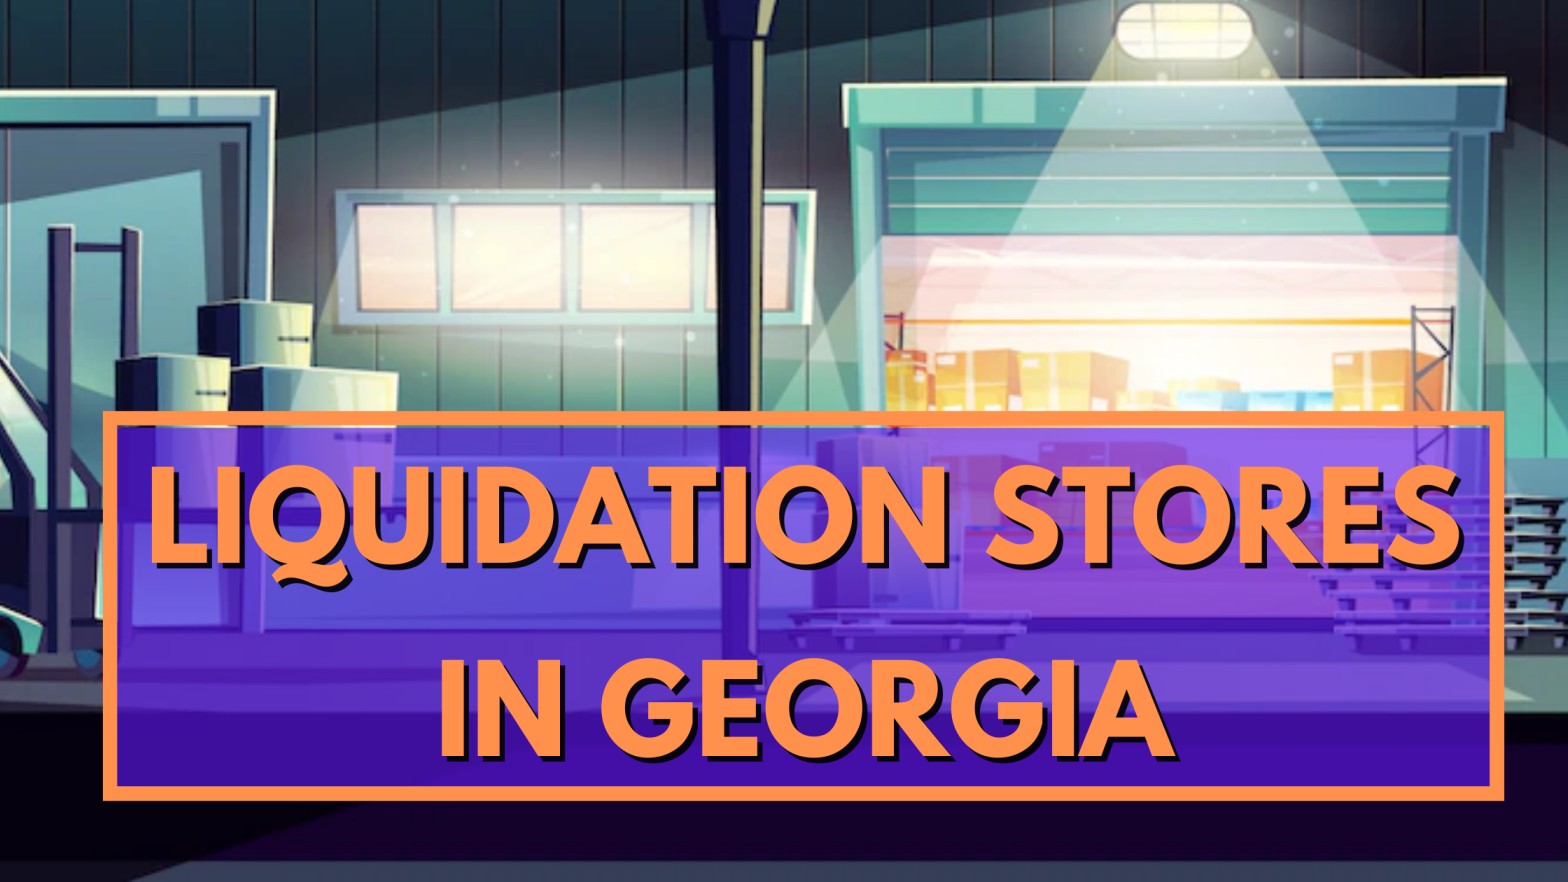 Liquidation Stores in Georgia